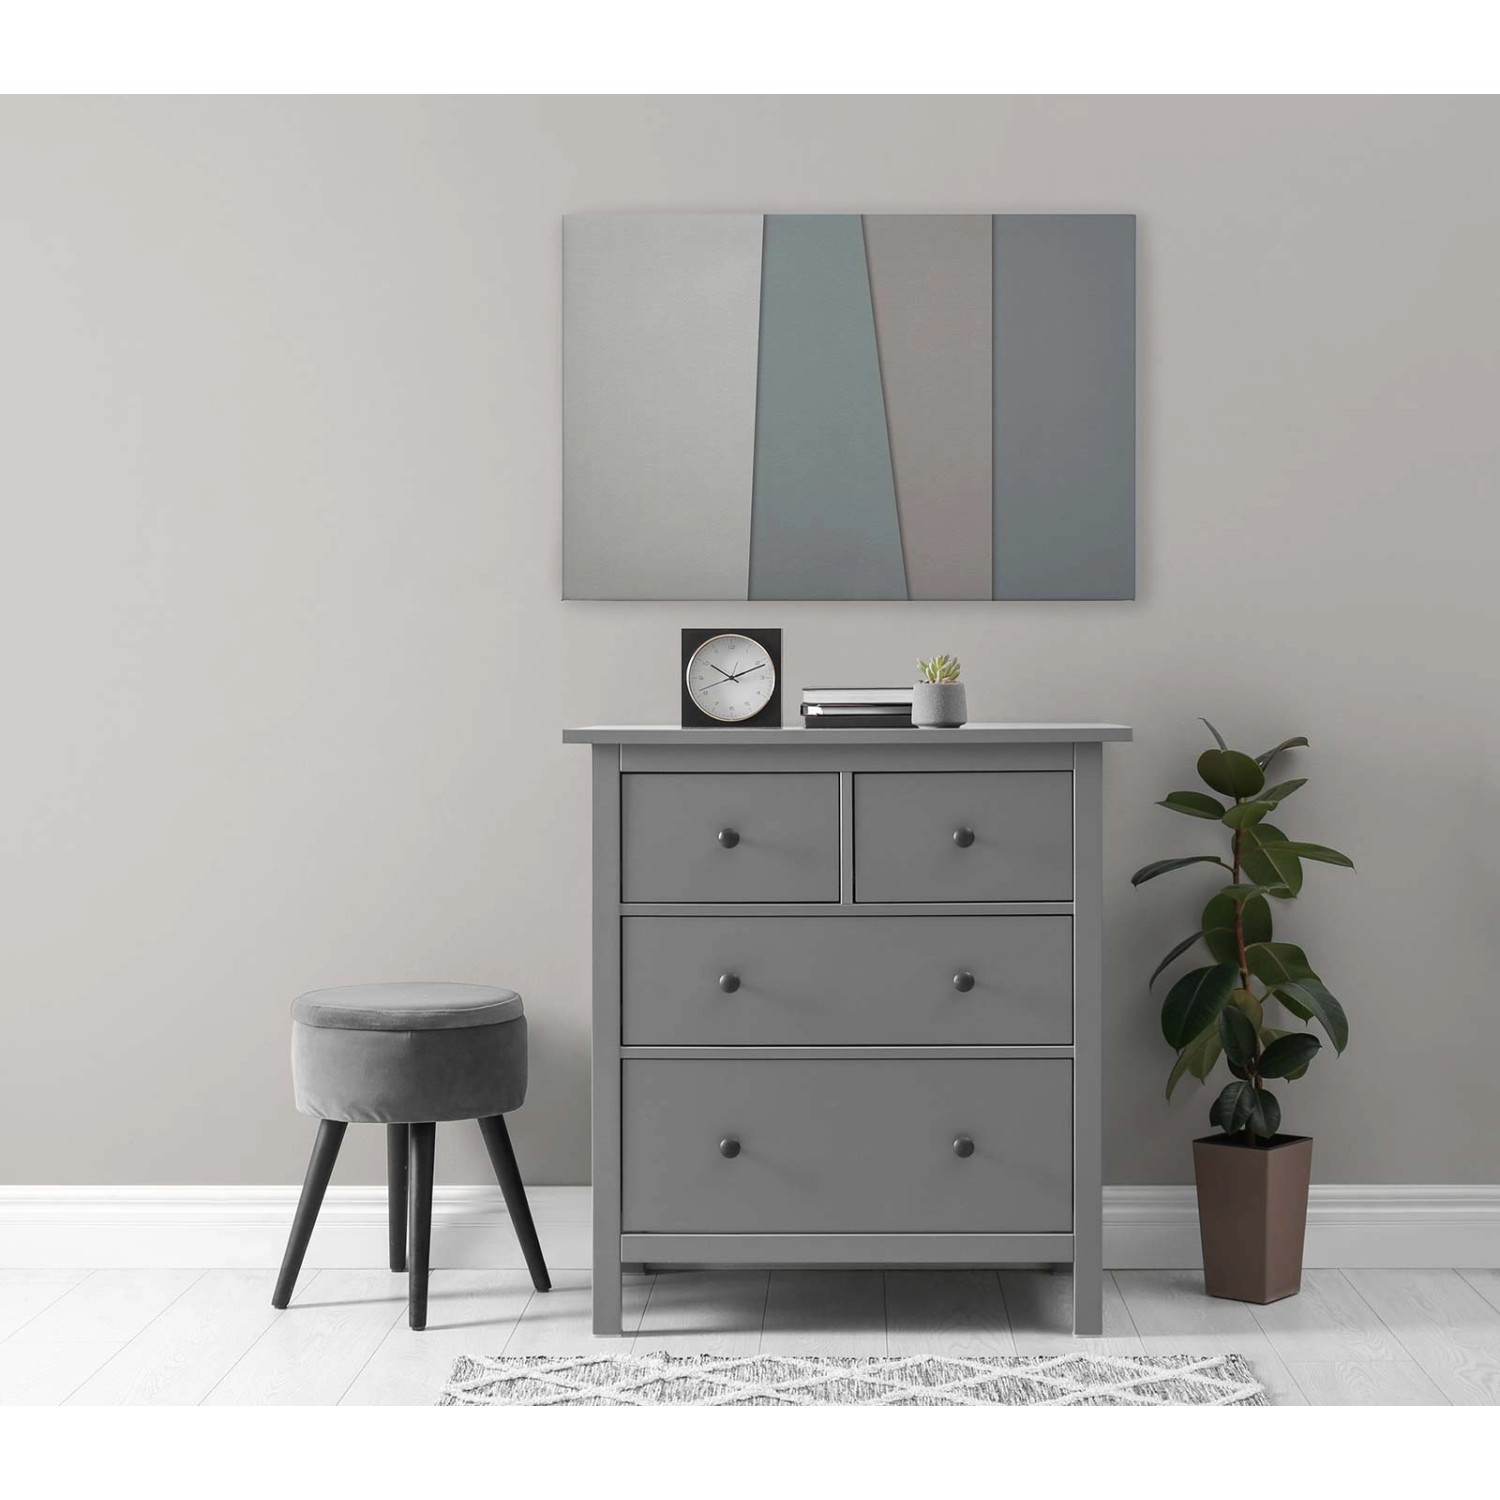 Bricoflor Minimalistisches Wandbild Grau Beige Leinwandbild Mit 3D Effekt Modern Deko Bild In 90 X 60 Cm Ideal Für Schla